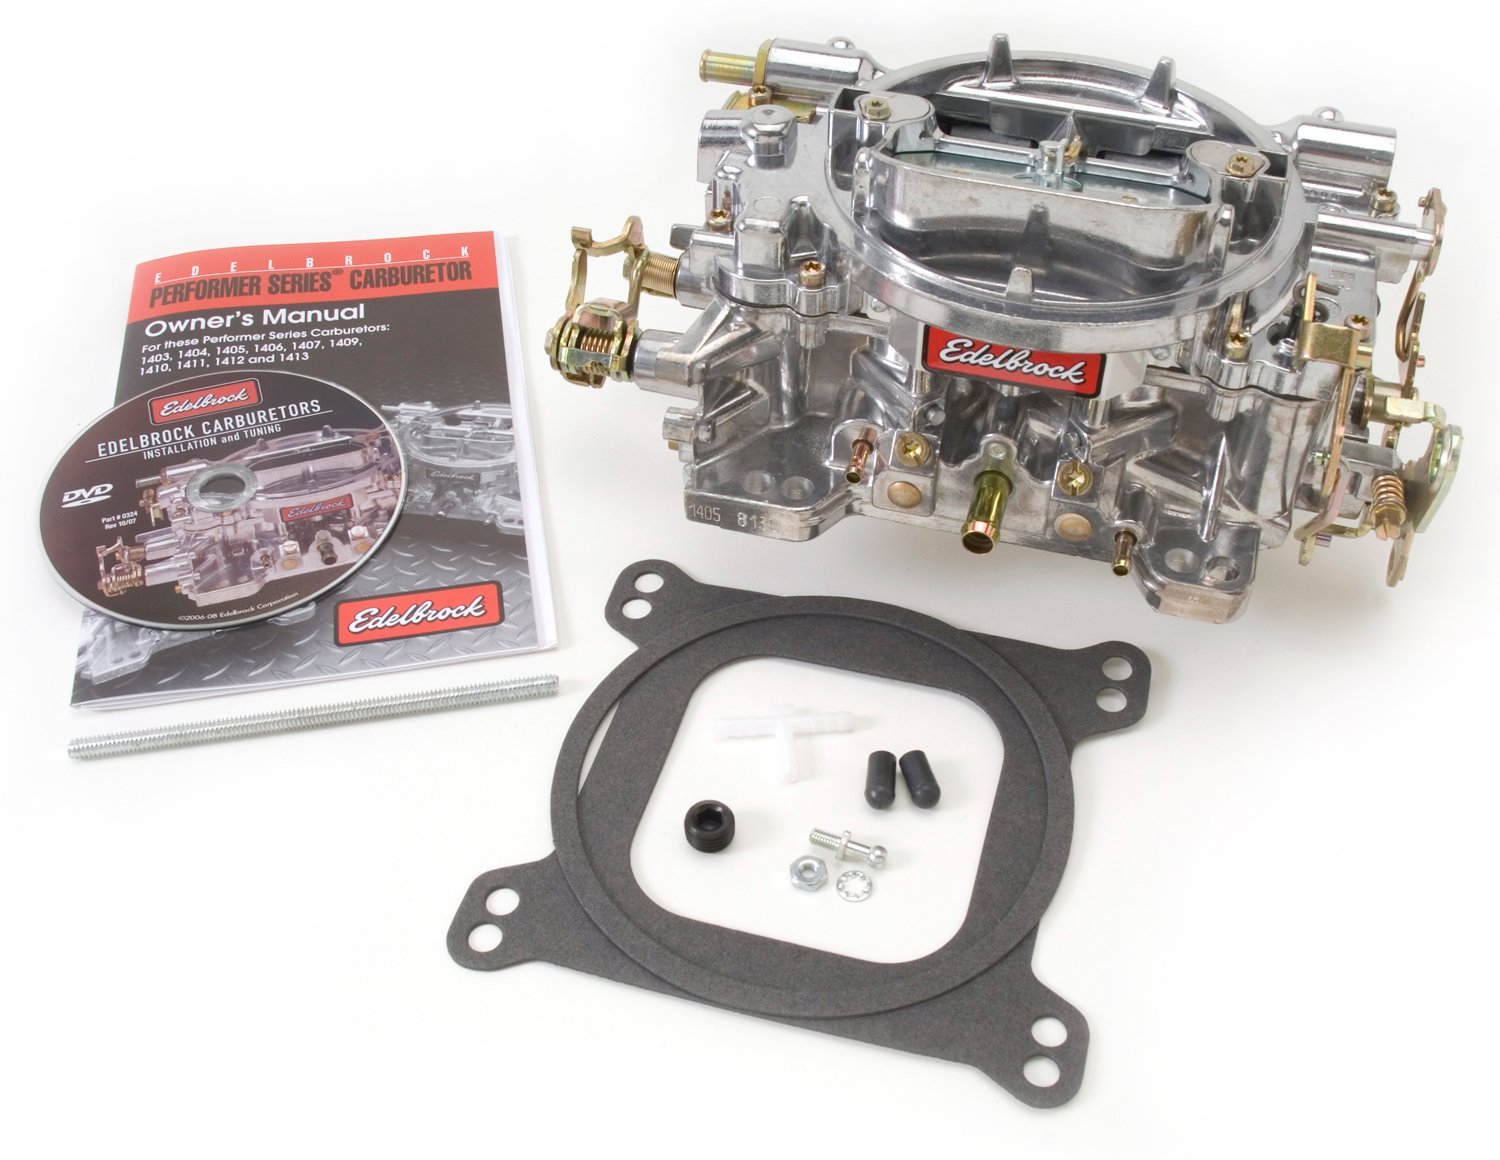 Edelbrock  Carburetor 600cfm - Manual choke